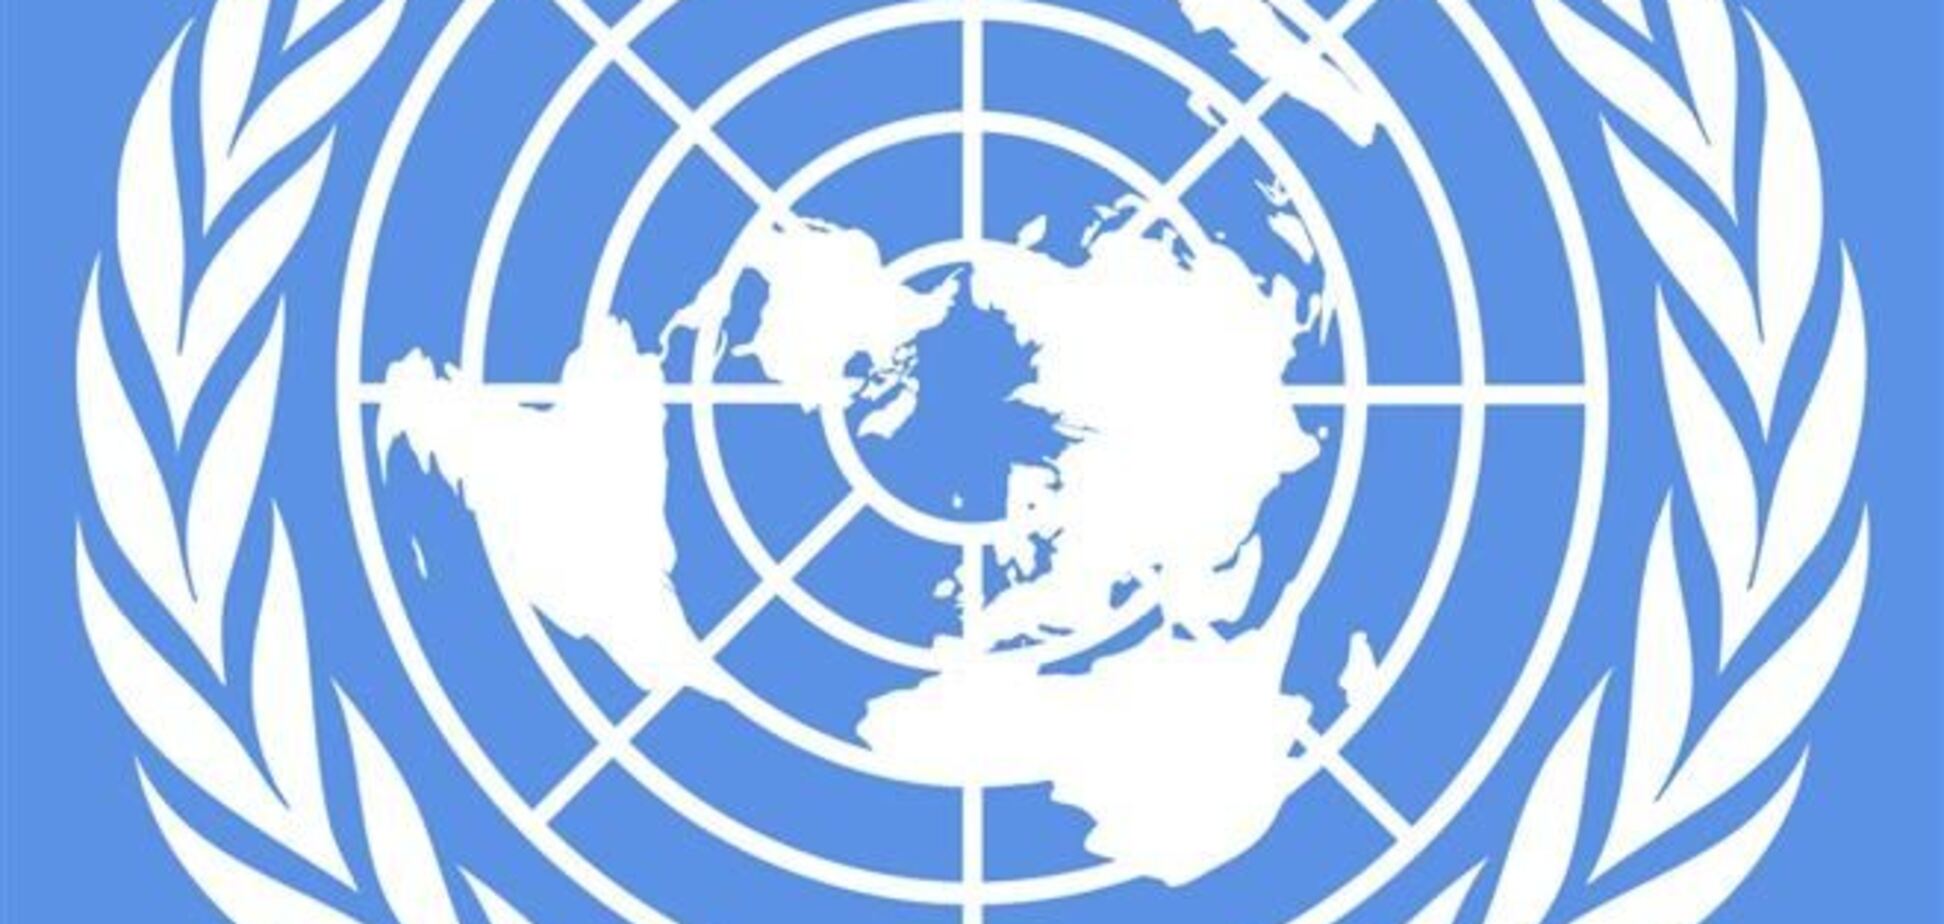 ООН начинает отслеживать ситуацию с правами человека по всей территории Украины 